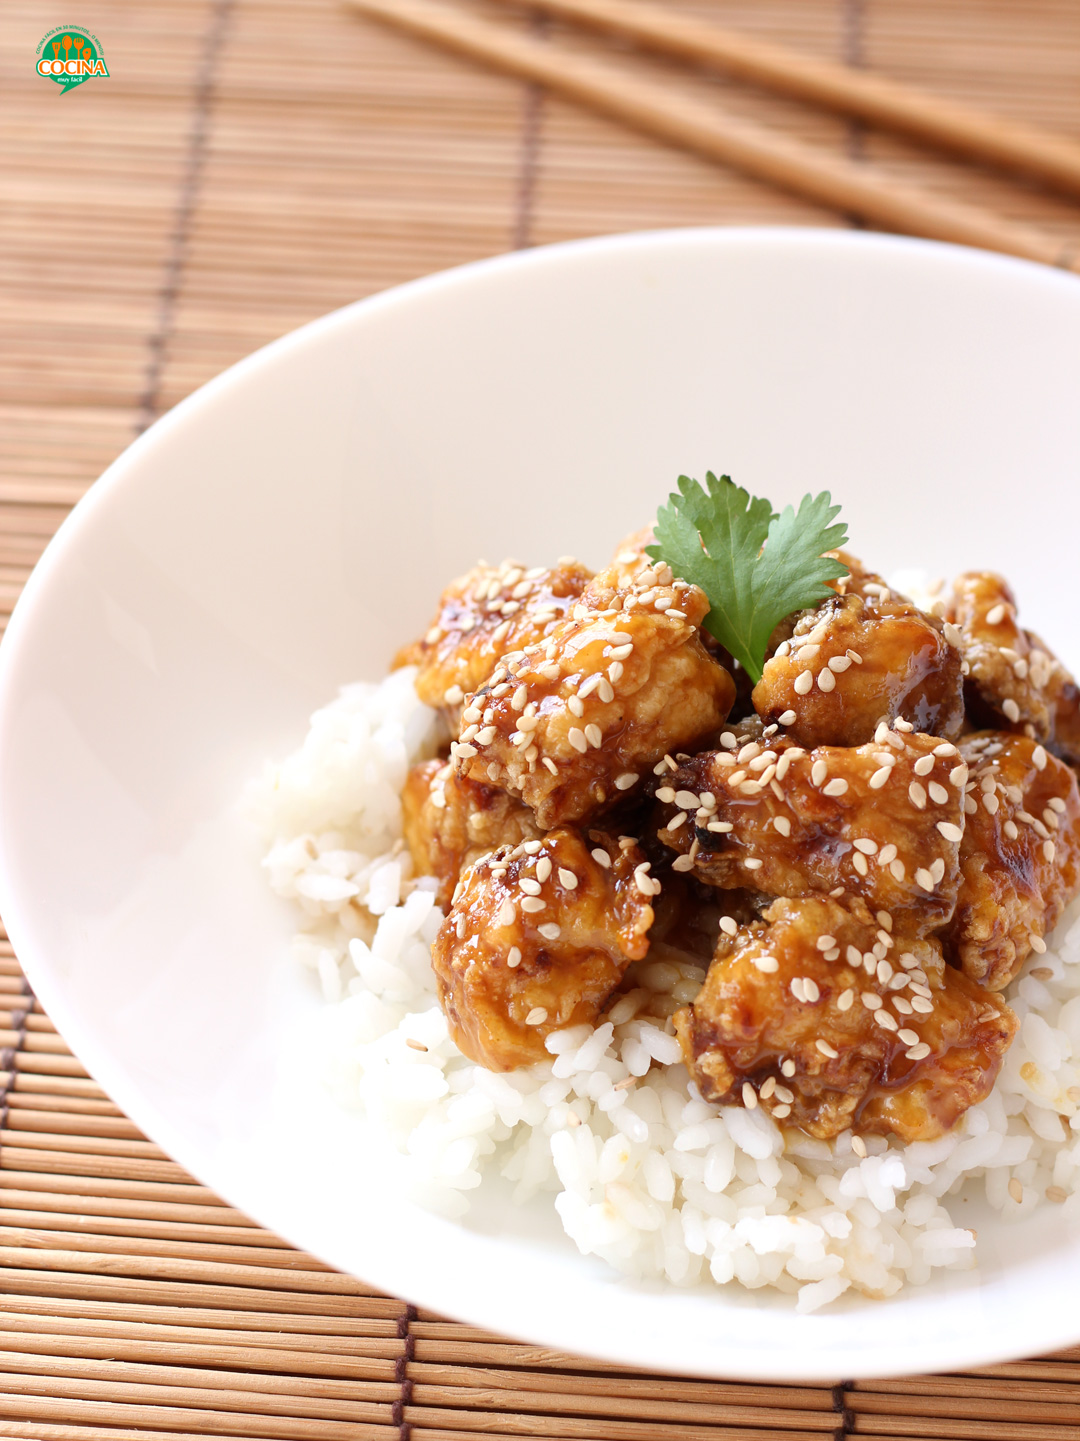 Receta de pollo a la naranja estilo chino | cocinamuyfacil.com